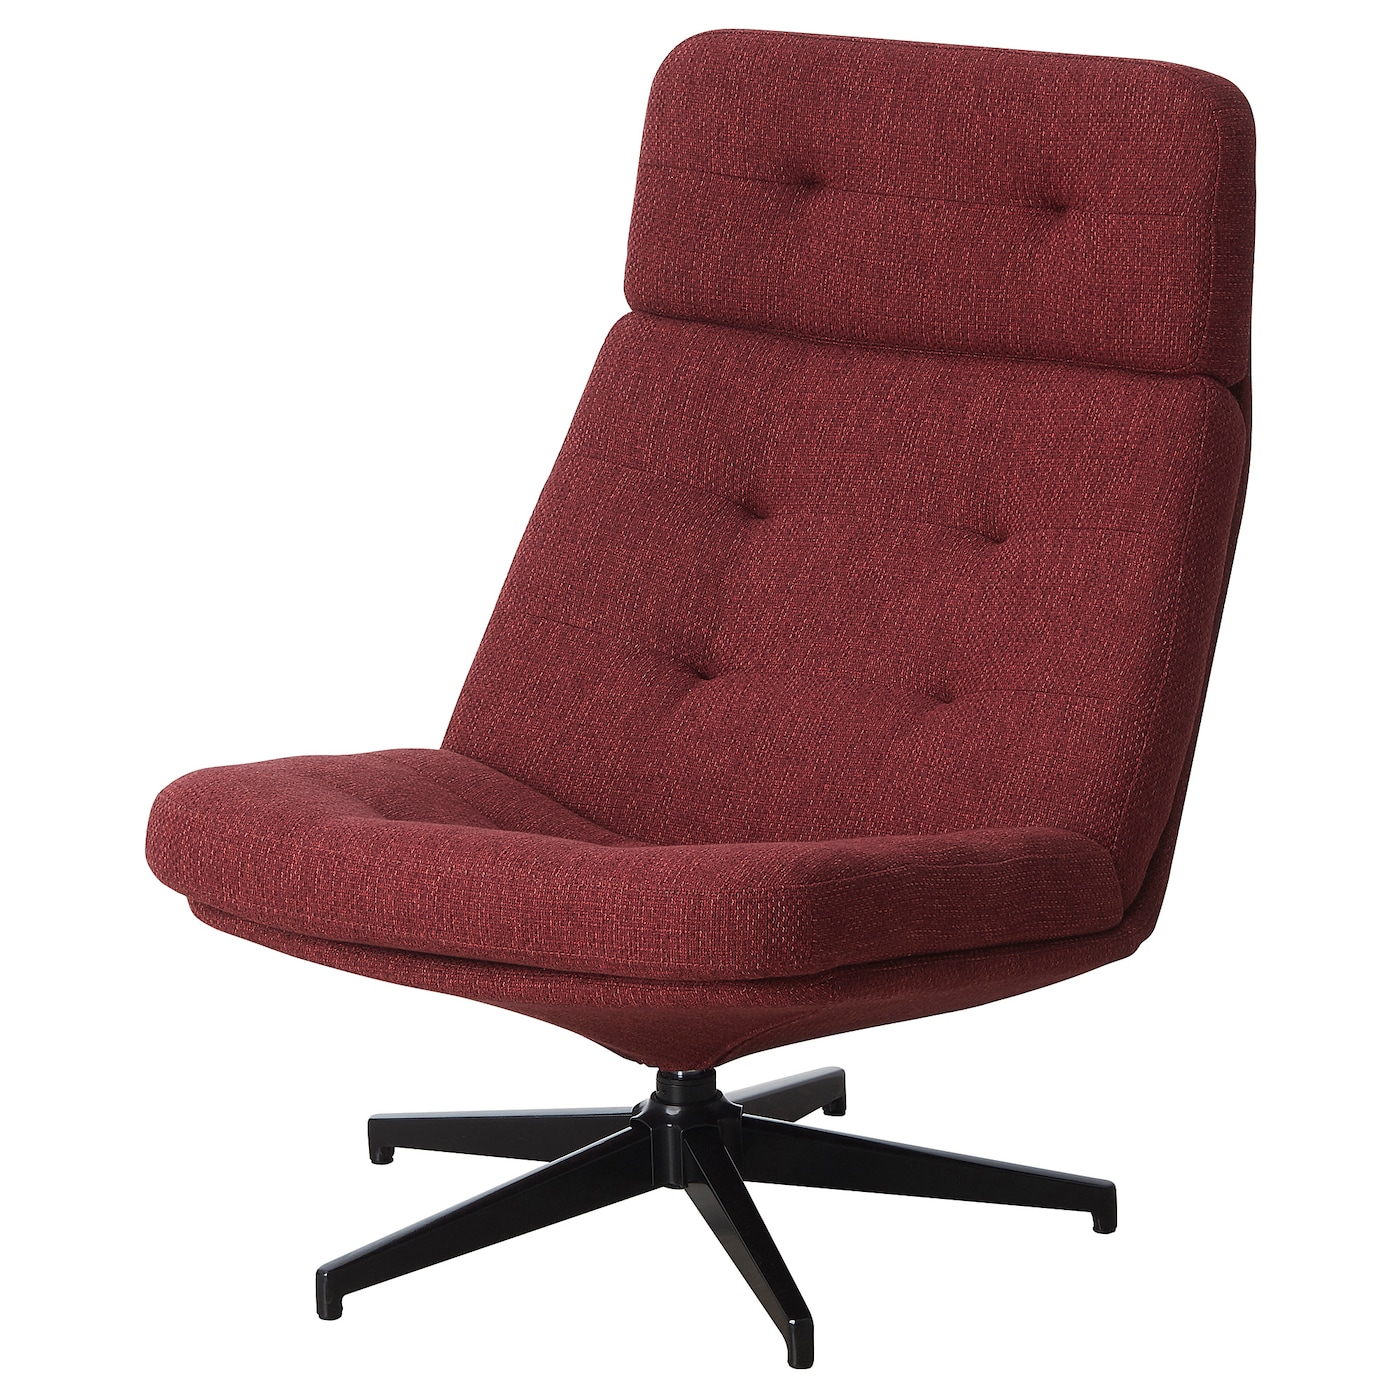 ХАВБЕРГ Вращающееся кресло, Лейде красно-коричневый HAVBERG IKEA офисное кресло массажное игровое кресло с rgb подсветкой эргономичное кресло для геймеров вращающееся кресло для студенческого компьютера